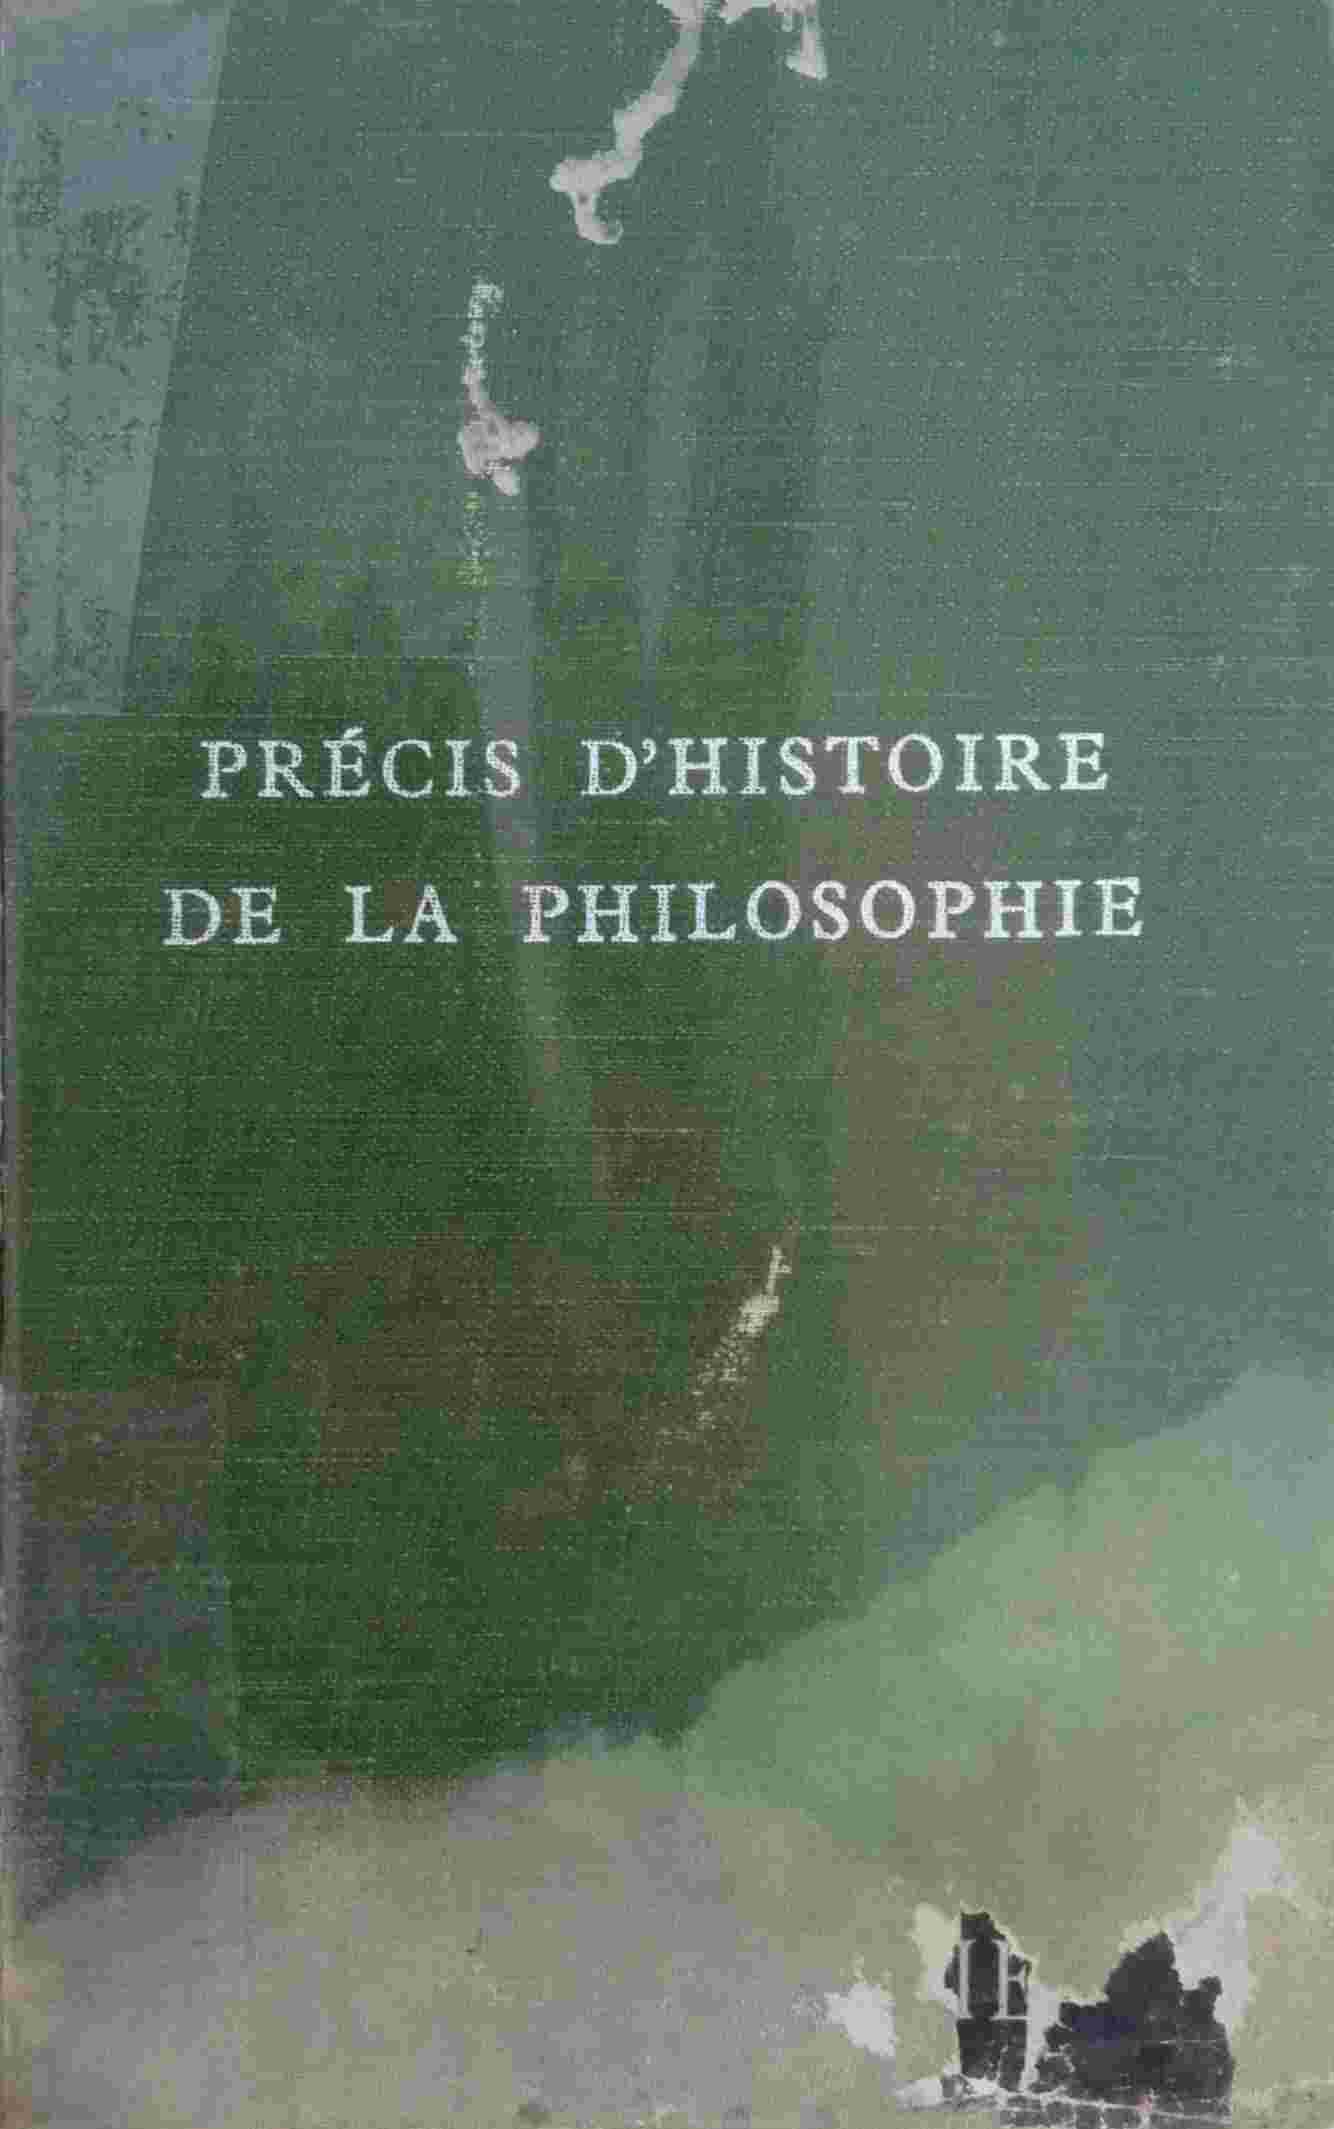 PRÉCIS D'histoire DE LA PHILOSOPHIE